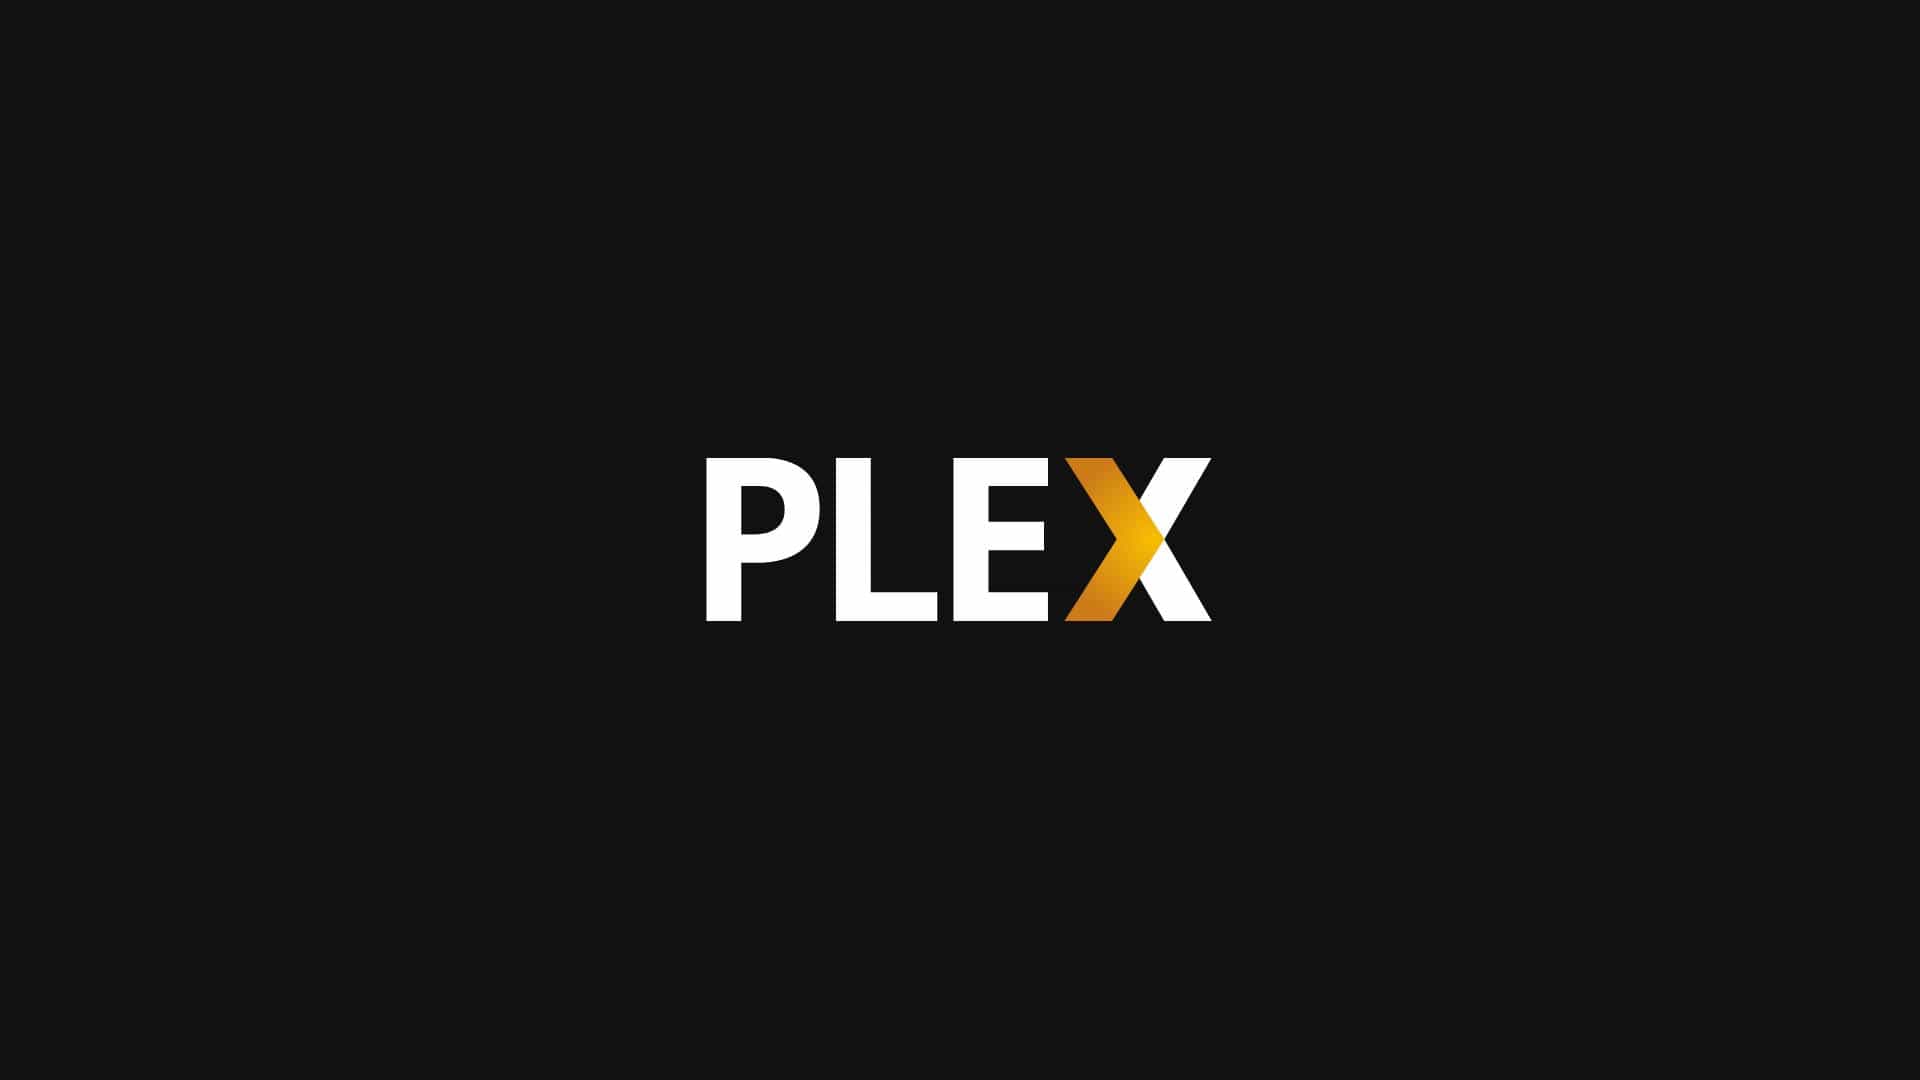 Application Fire TV Plex - Plex Splash